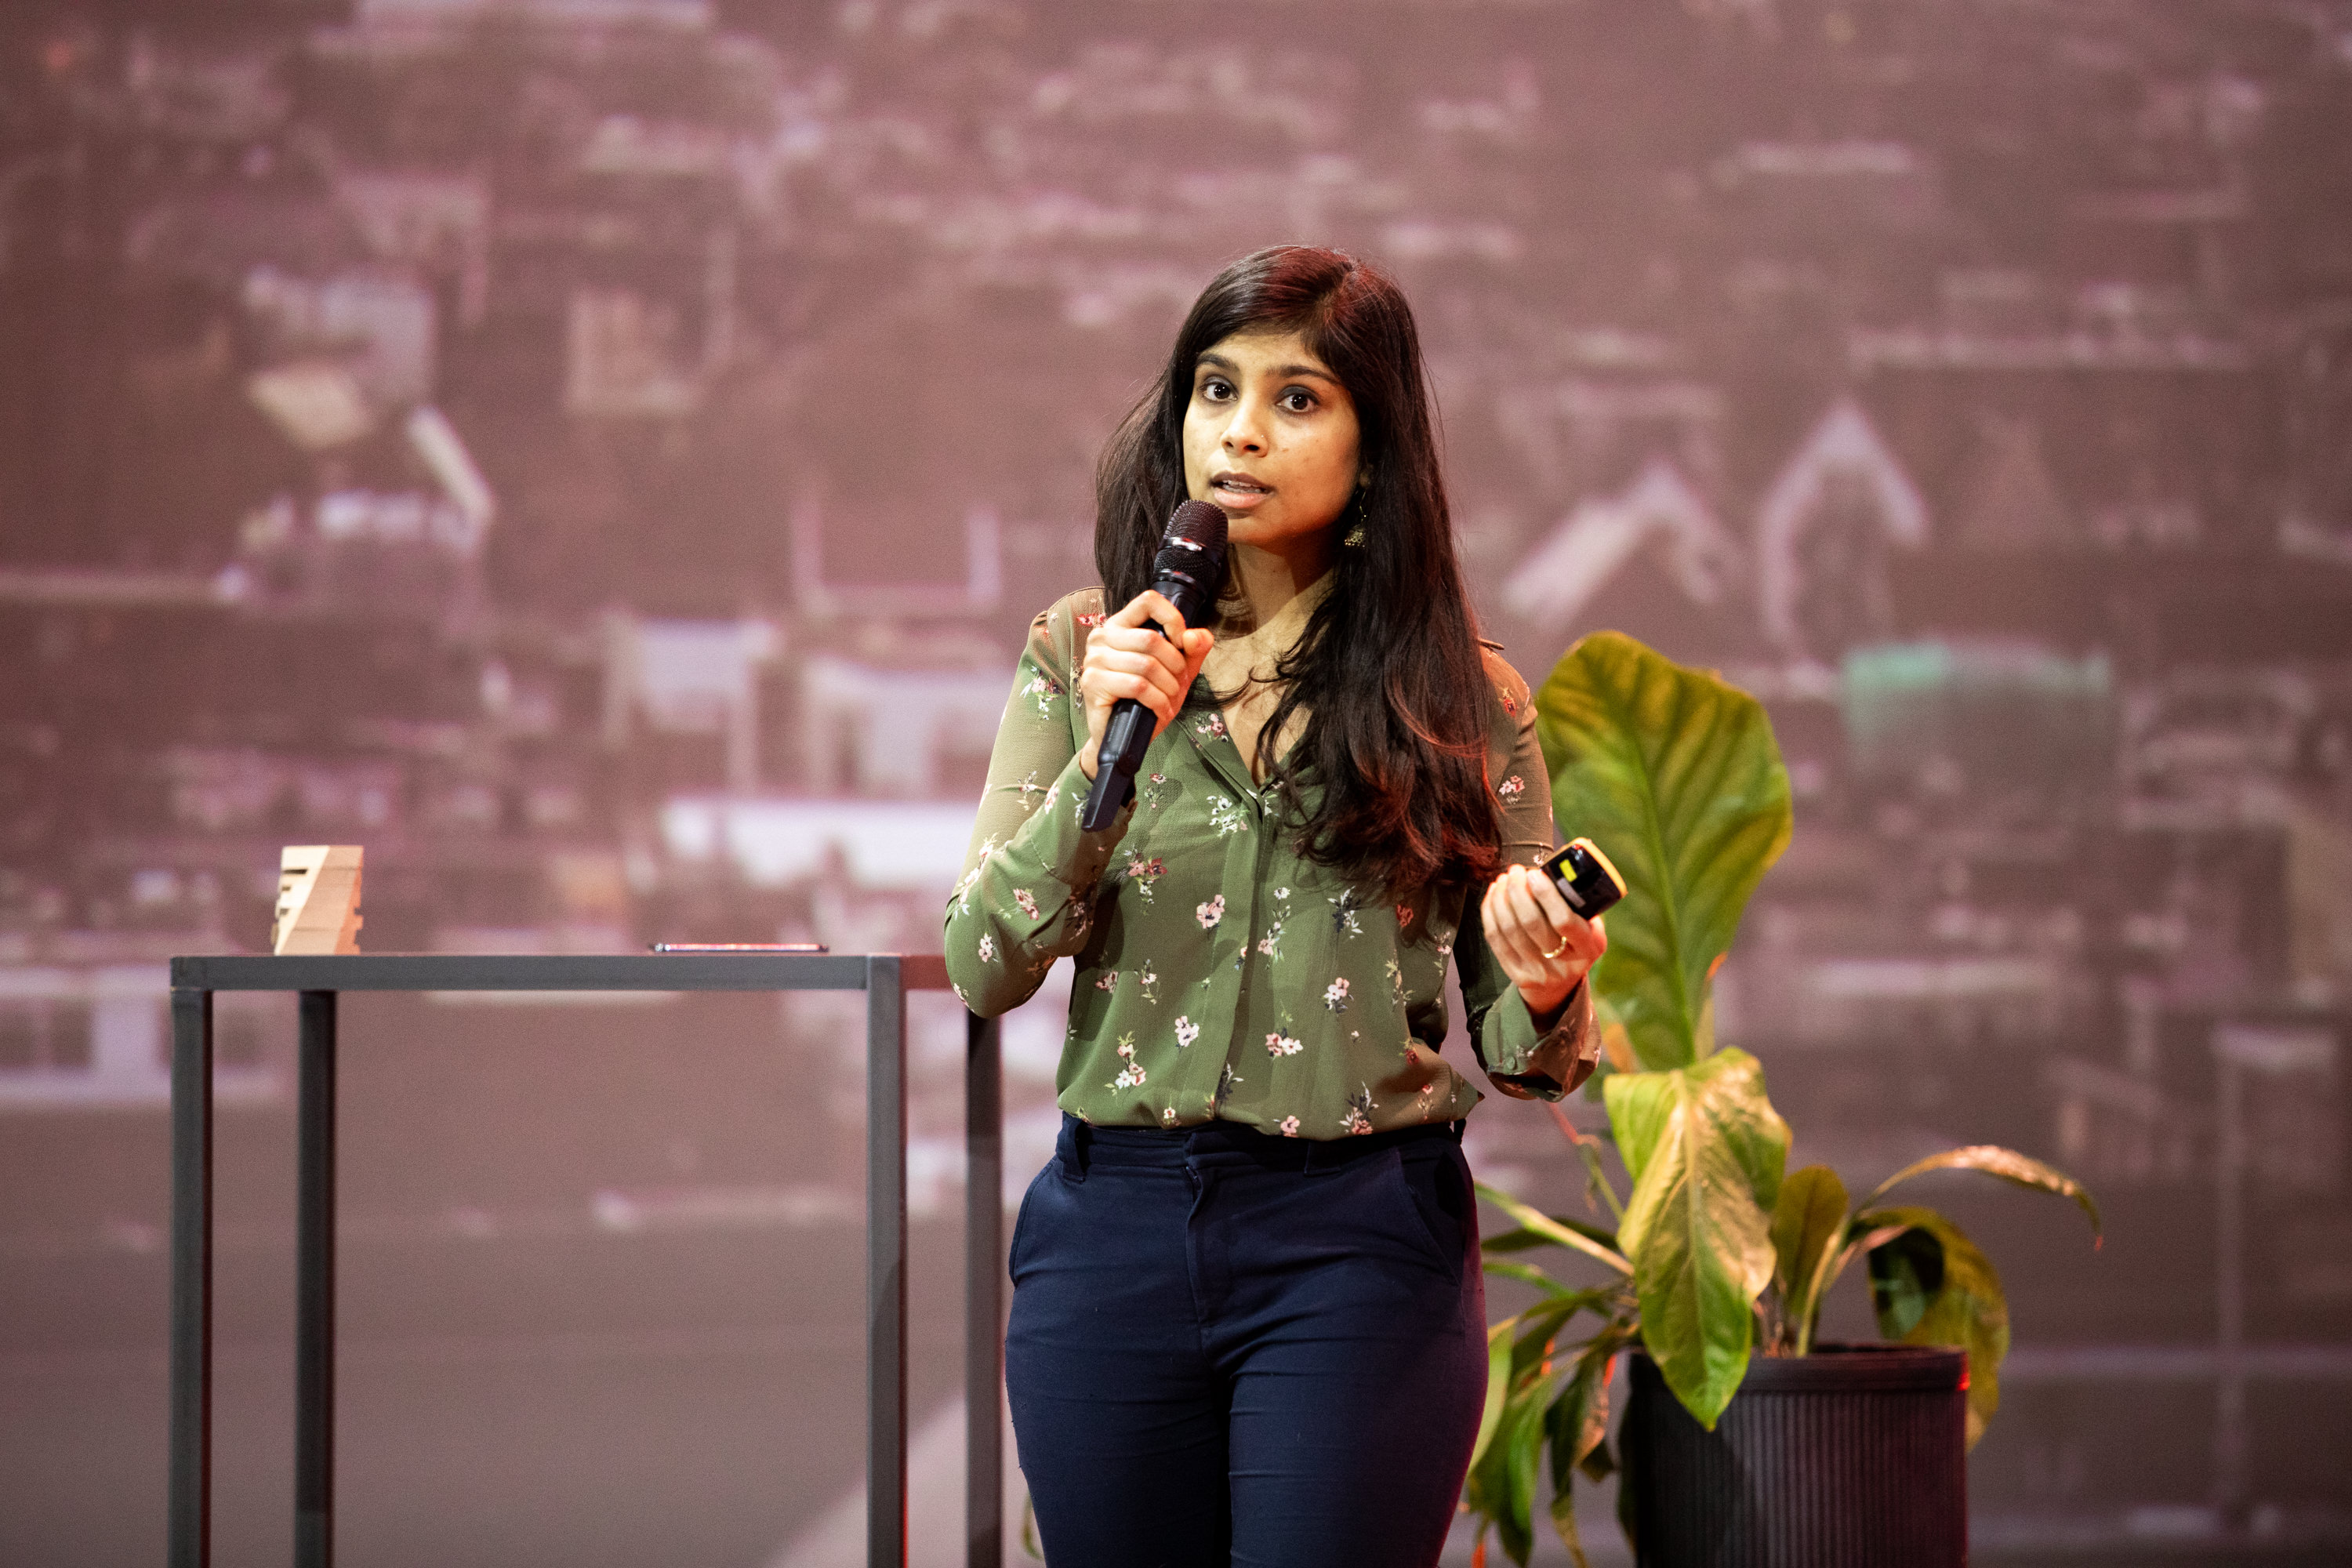 Kritika Maheshwari wins bonus prize for most persuasive pitch